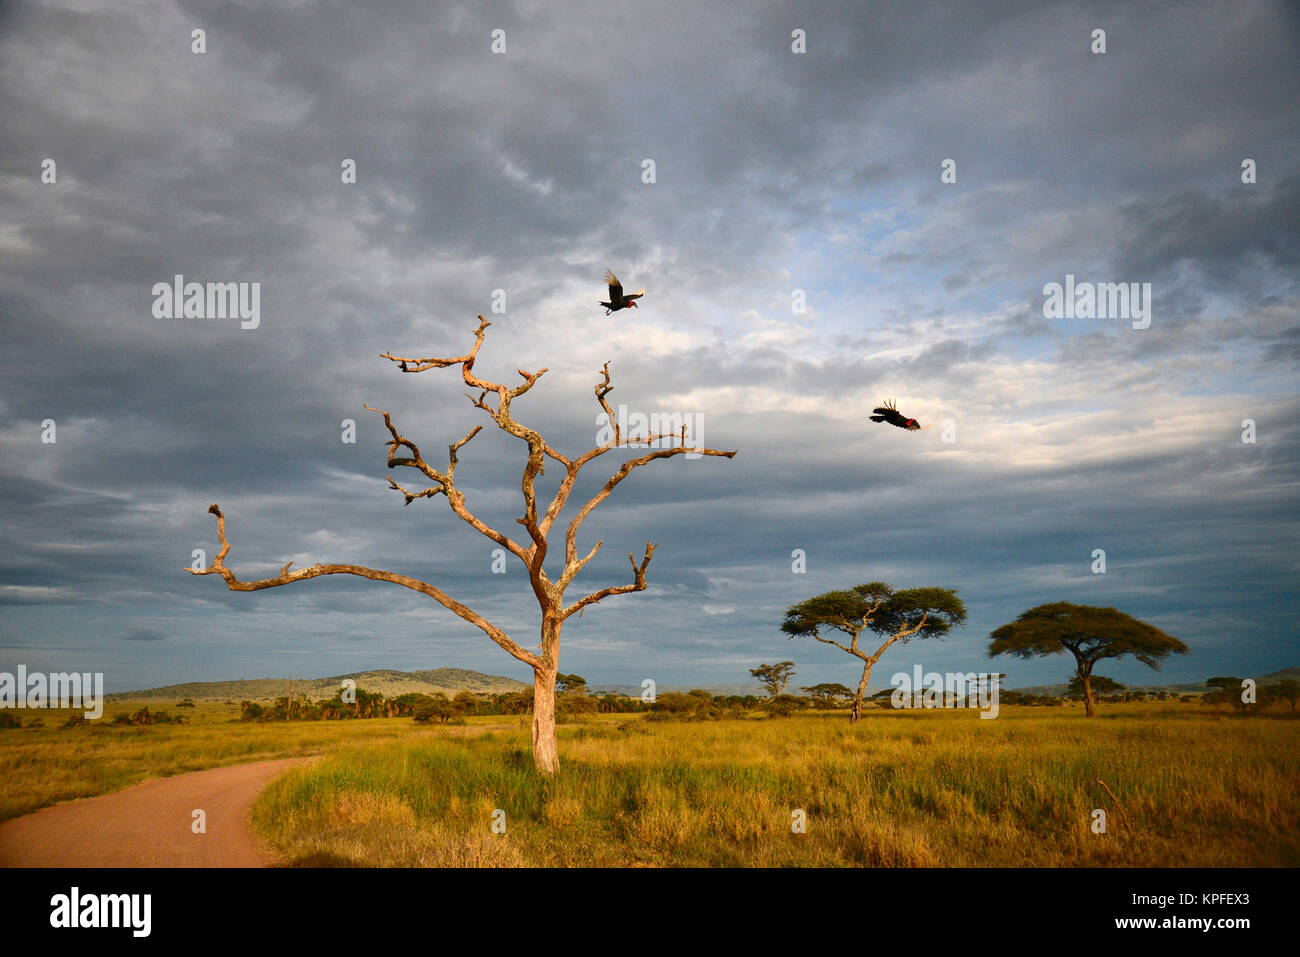 La fauna selvatica sightseeing in una delle principali destinazioni della fauna selvatica su earht -- Serengeti, Tanzania. Massa hornbills volando da albero morto e il cielo in tempesta. Foto Stock